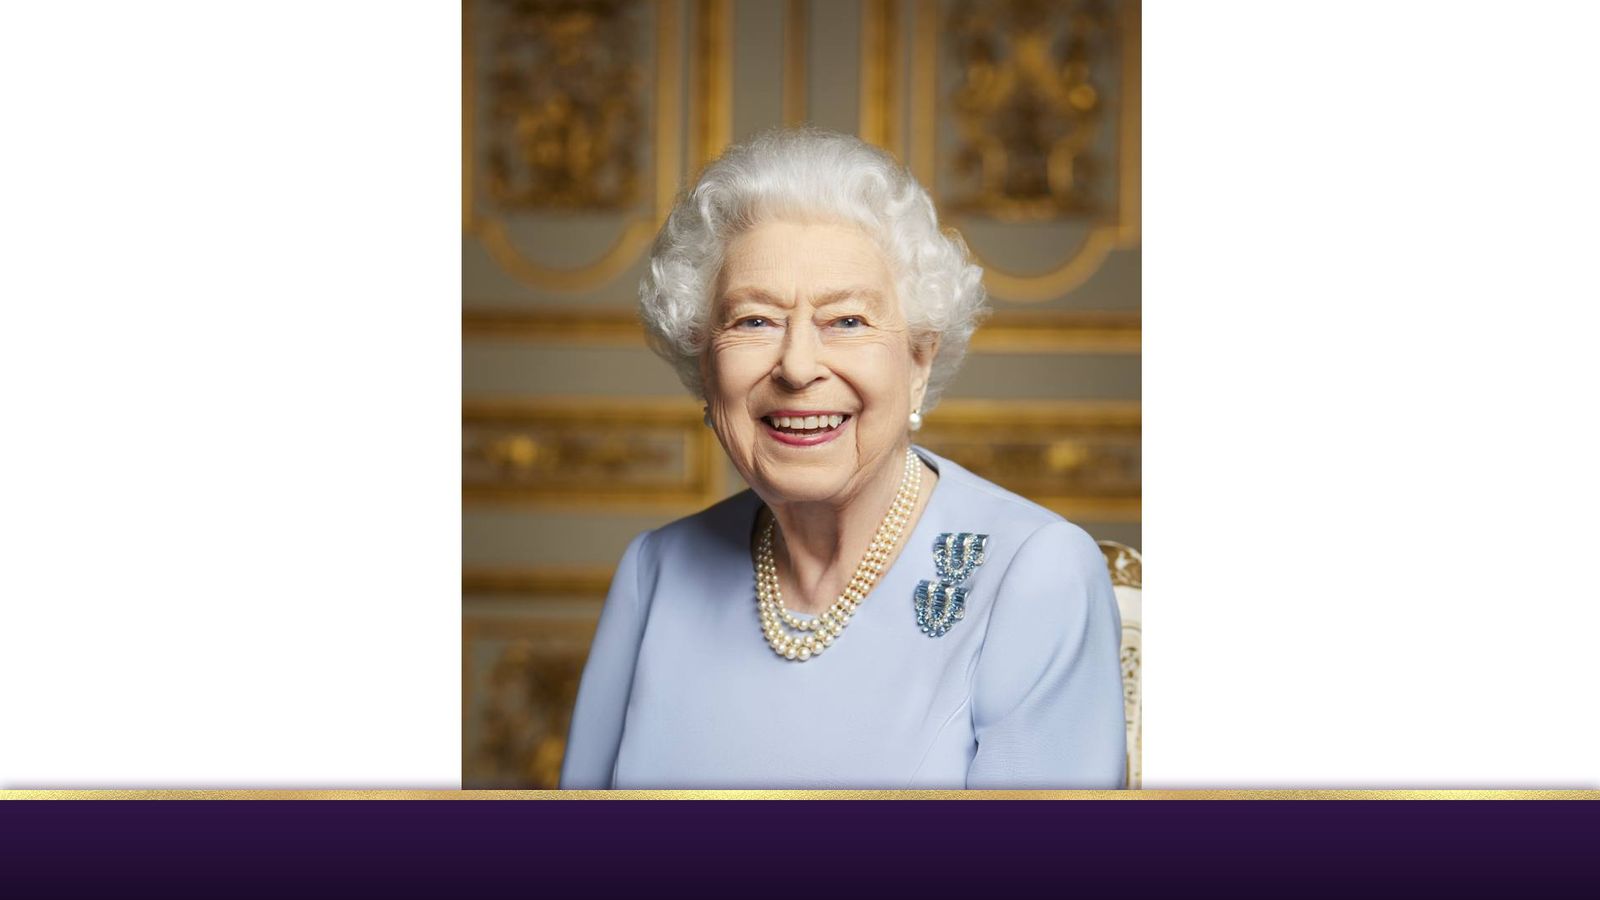 Смерть королевы: невидимая фотография улыбающейся королевы, сделанная во время празднования юбилея дворца |  новости Великобритании